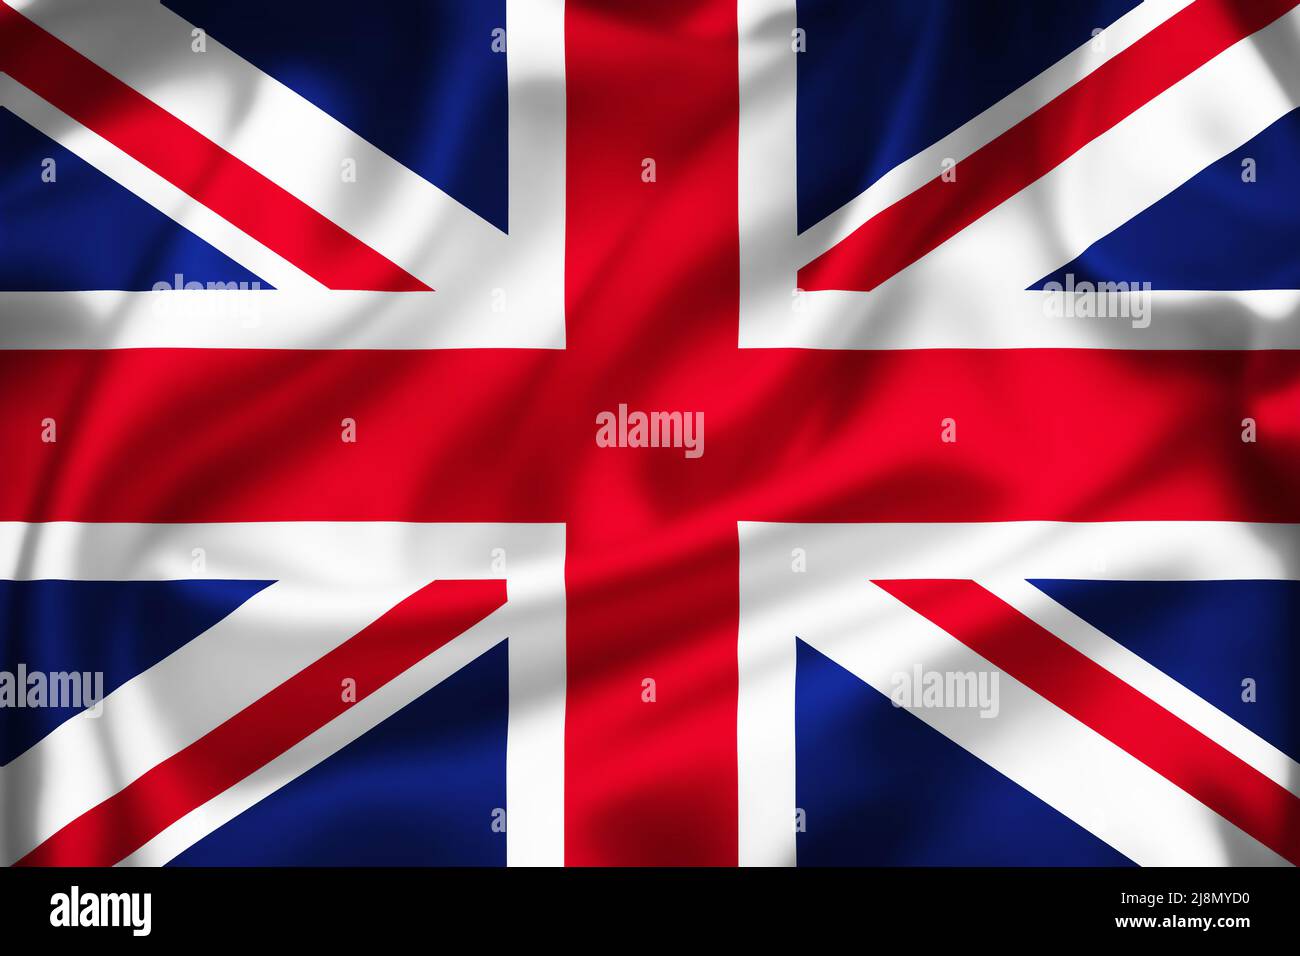 United Kingdom colorful silk flag illustration, country symbol of UK Stock Photo